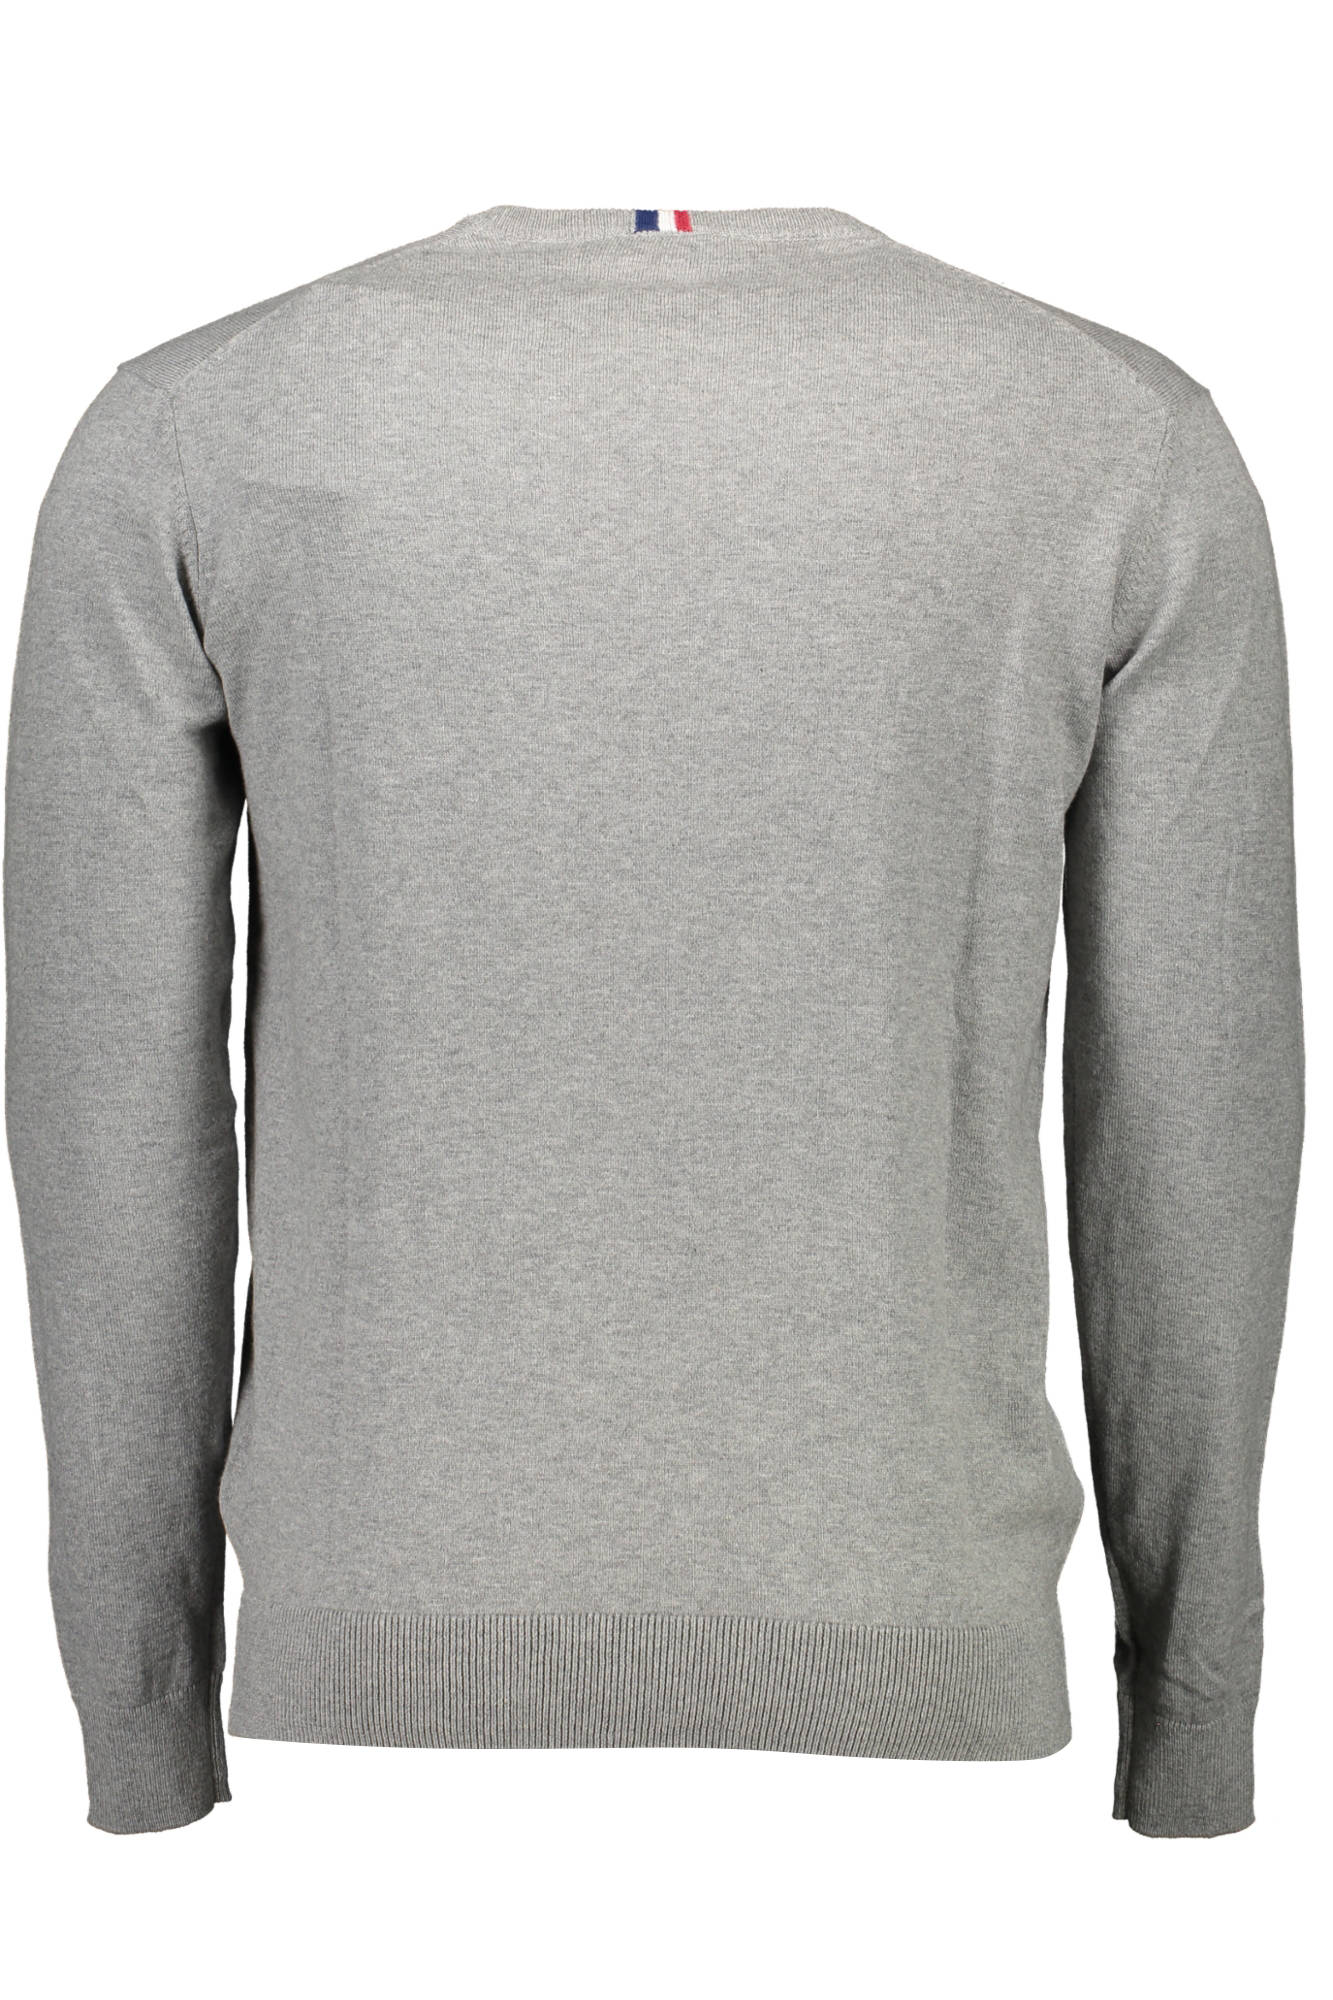 U.S. POLO ASSN. Gray Sweater - Fizigo